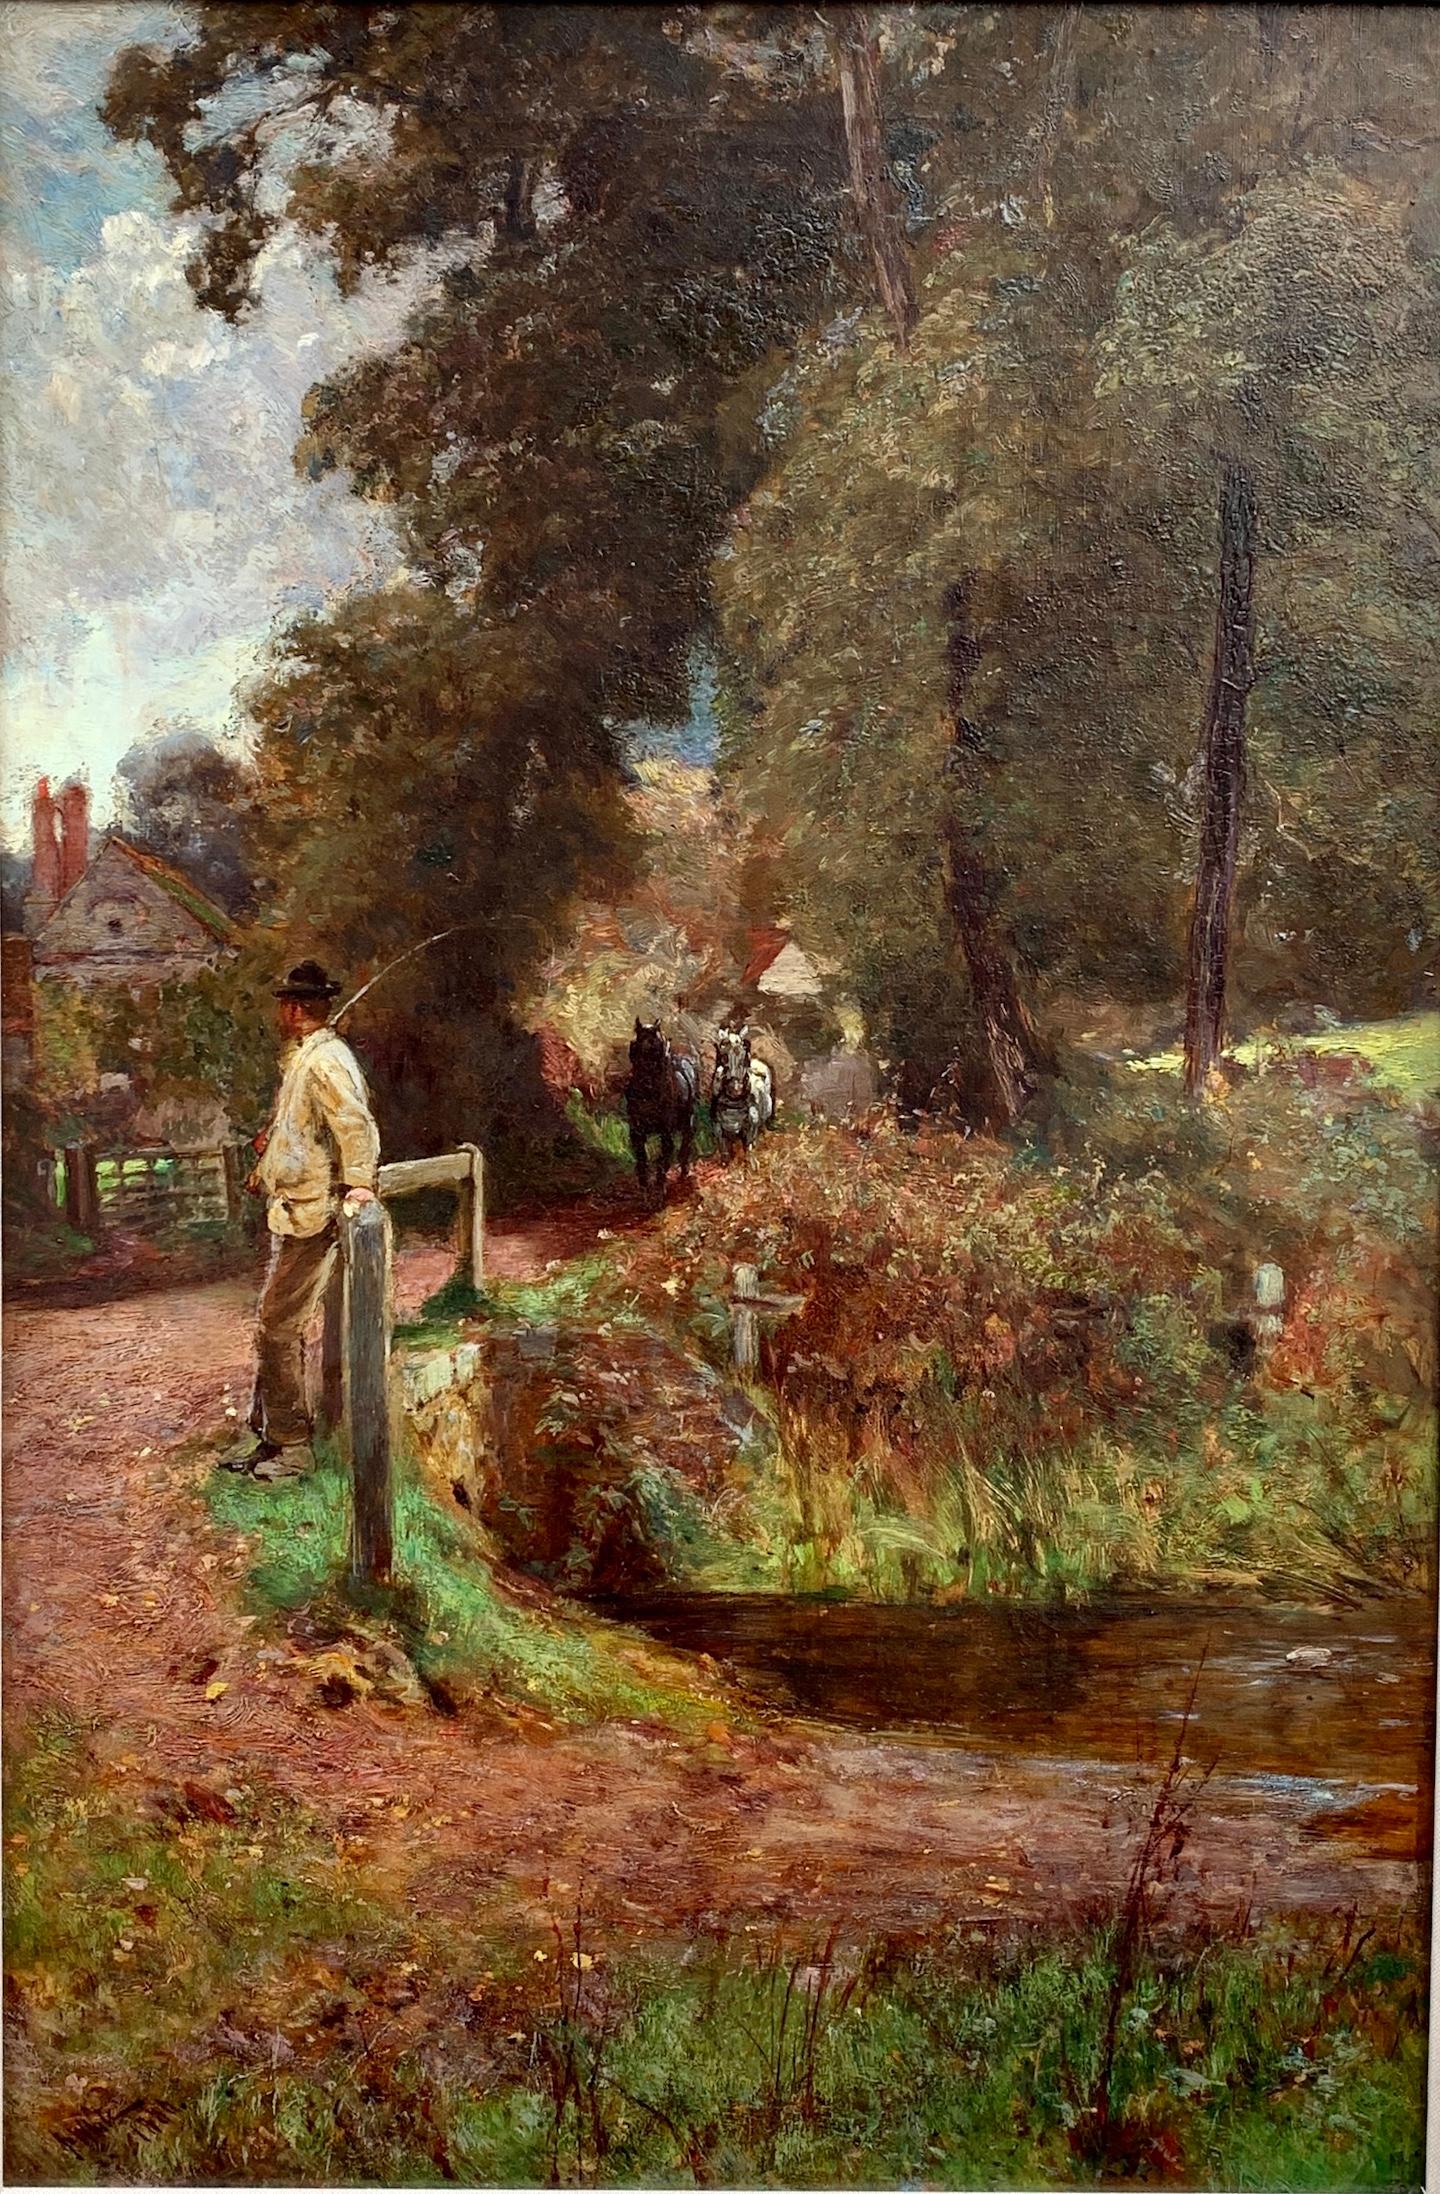 Englische Landschaft des 19. Jahrhunderts mit einem Mann, der auf ein Pfluggespann wartet – Painting von John White